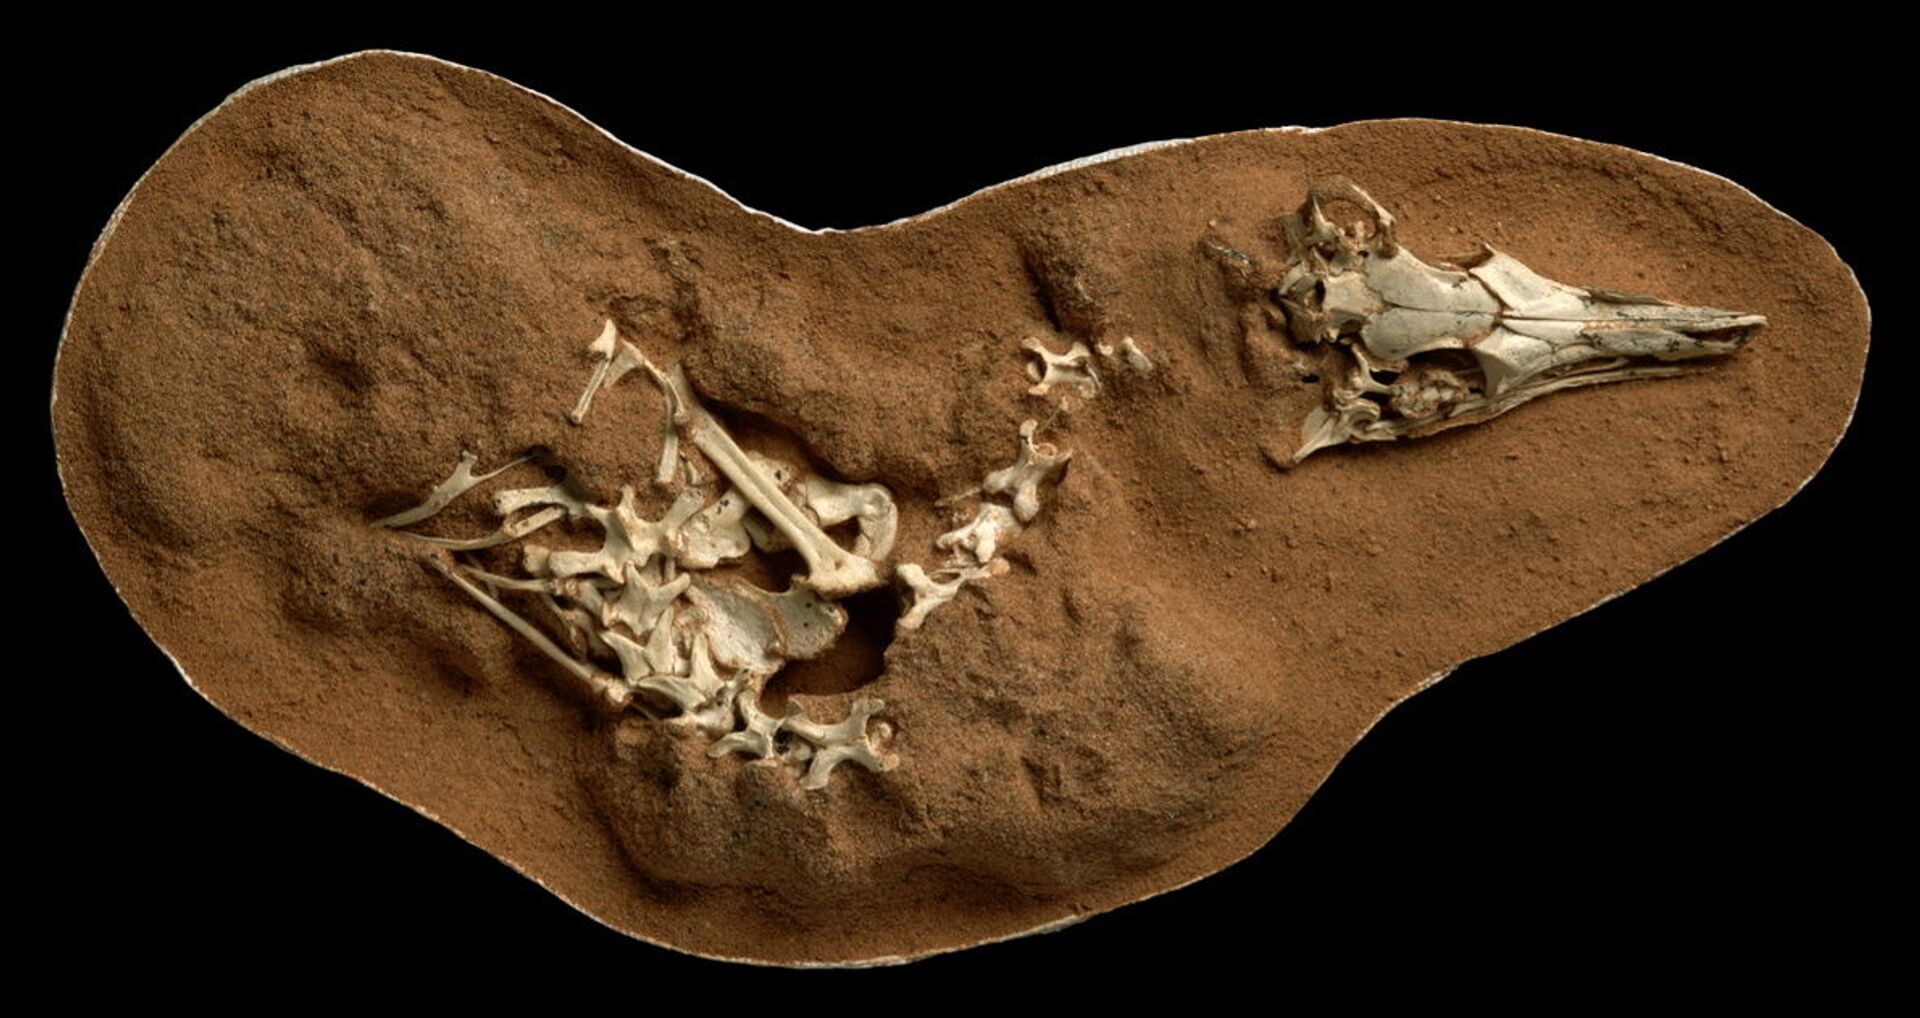 Dinossauro desenterrado por paleontólogos tinha 'vida noturna', segundo estudo (FOTO) - Sputnik Brasil, 1920, 07.05.2021